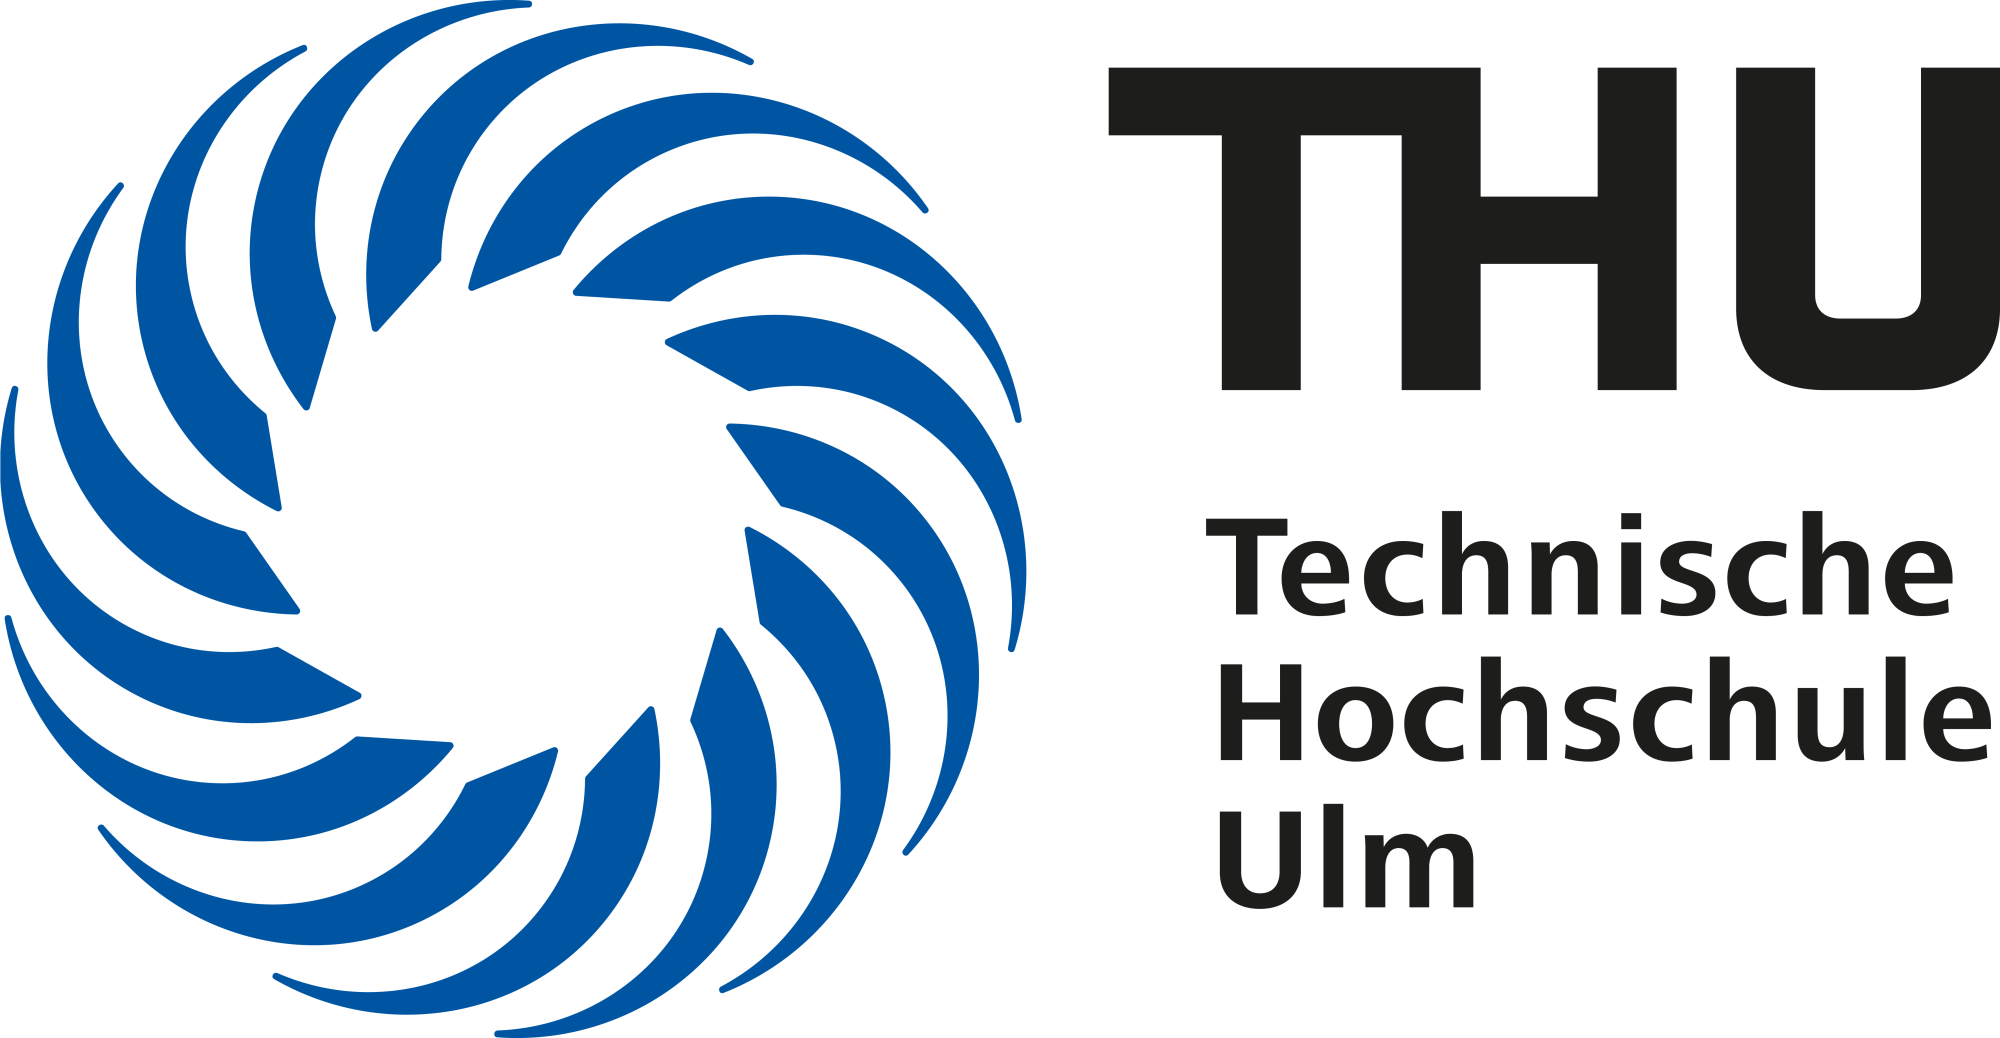 Logo: Technische Hochschule Ulm